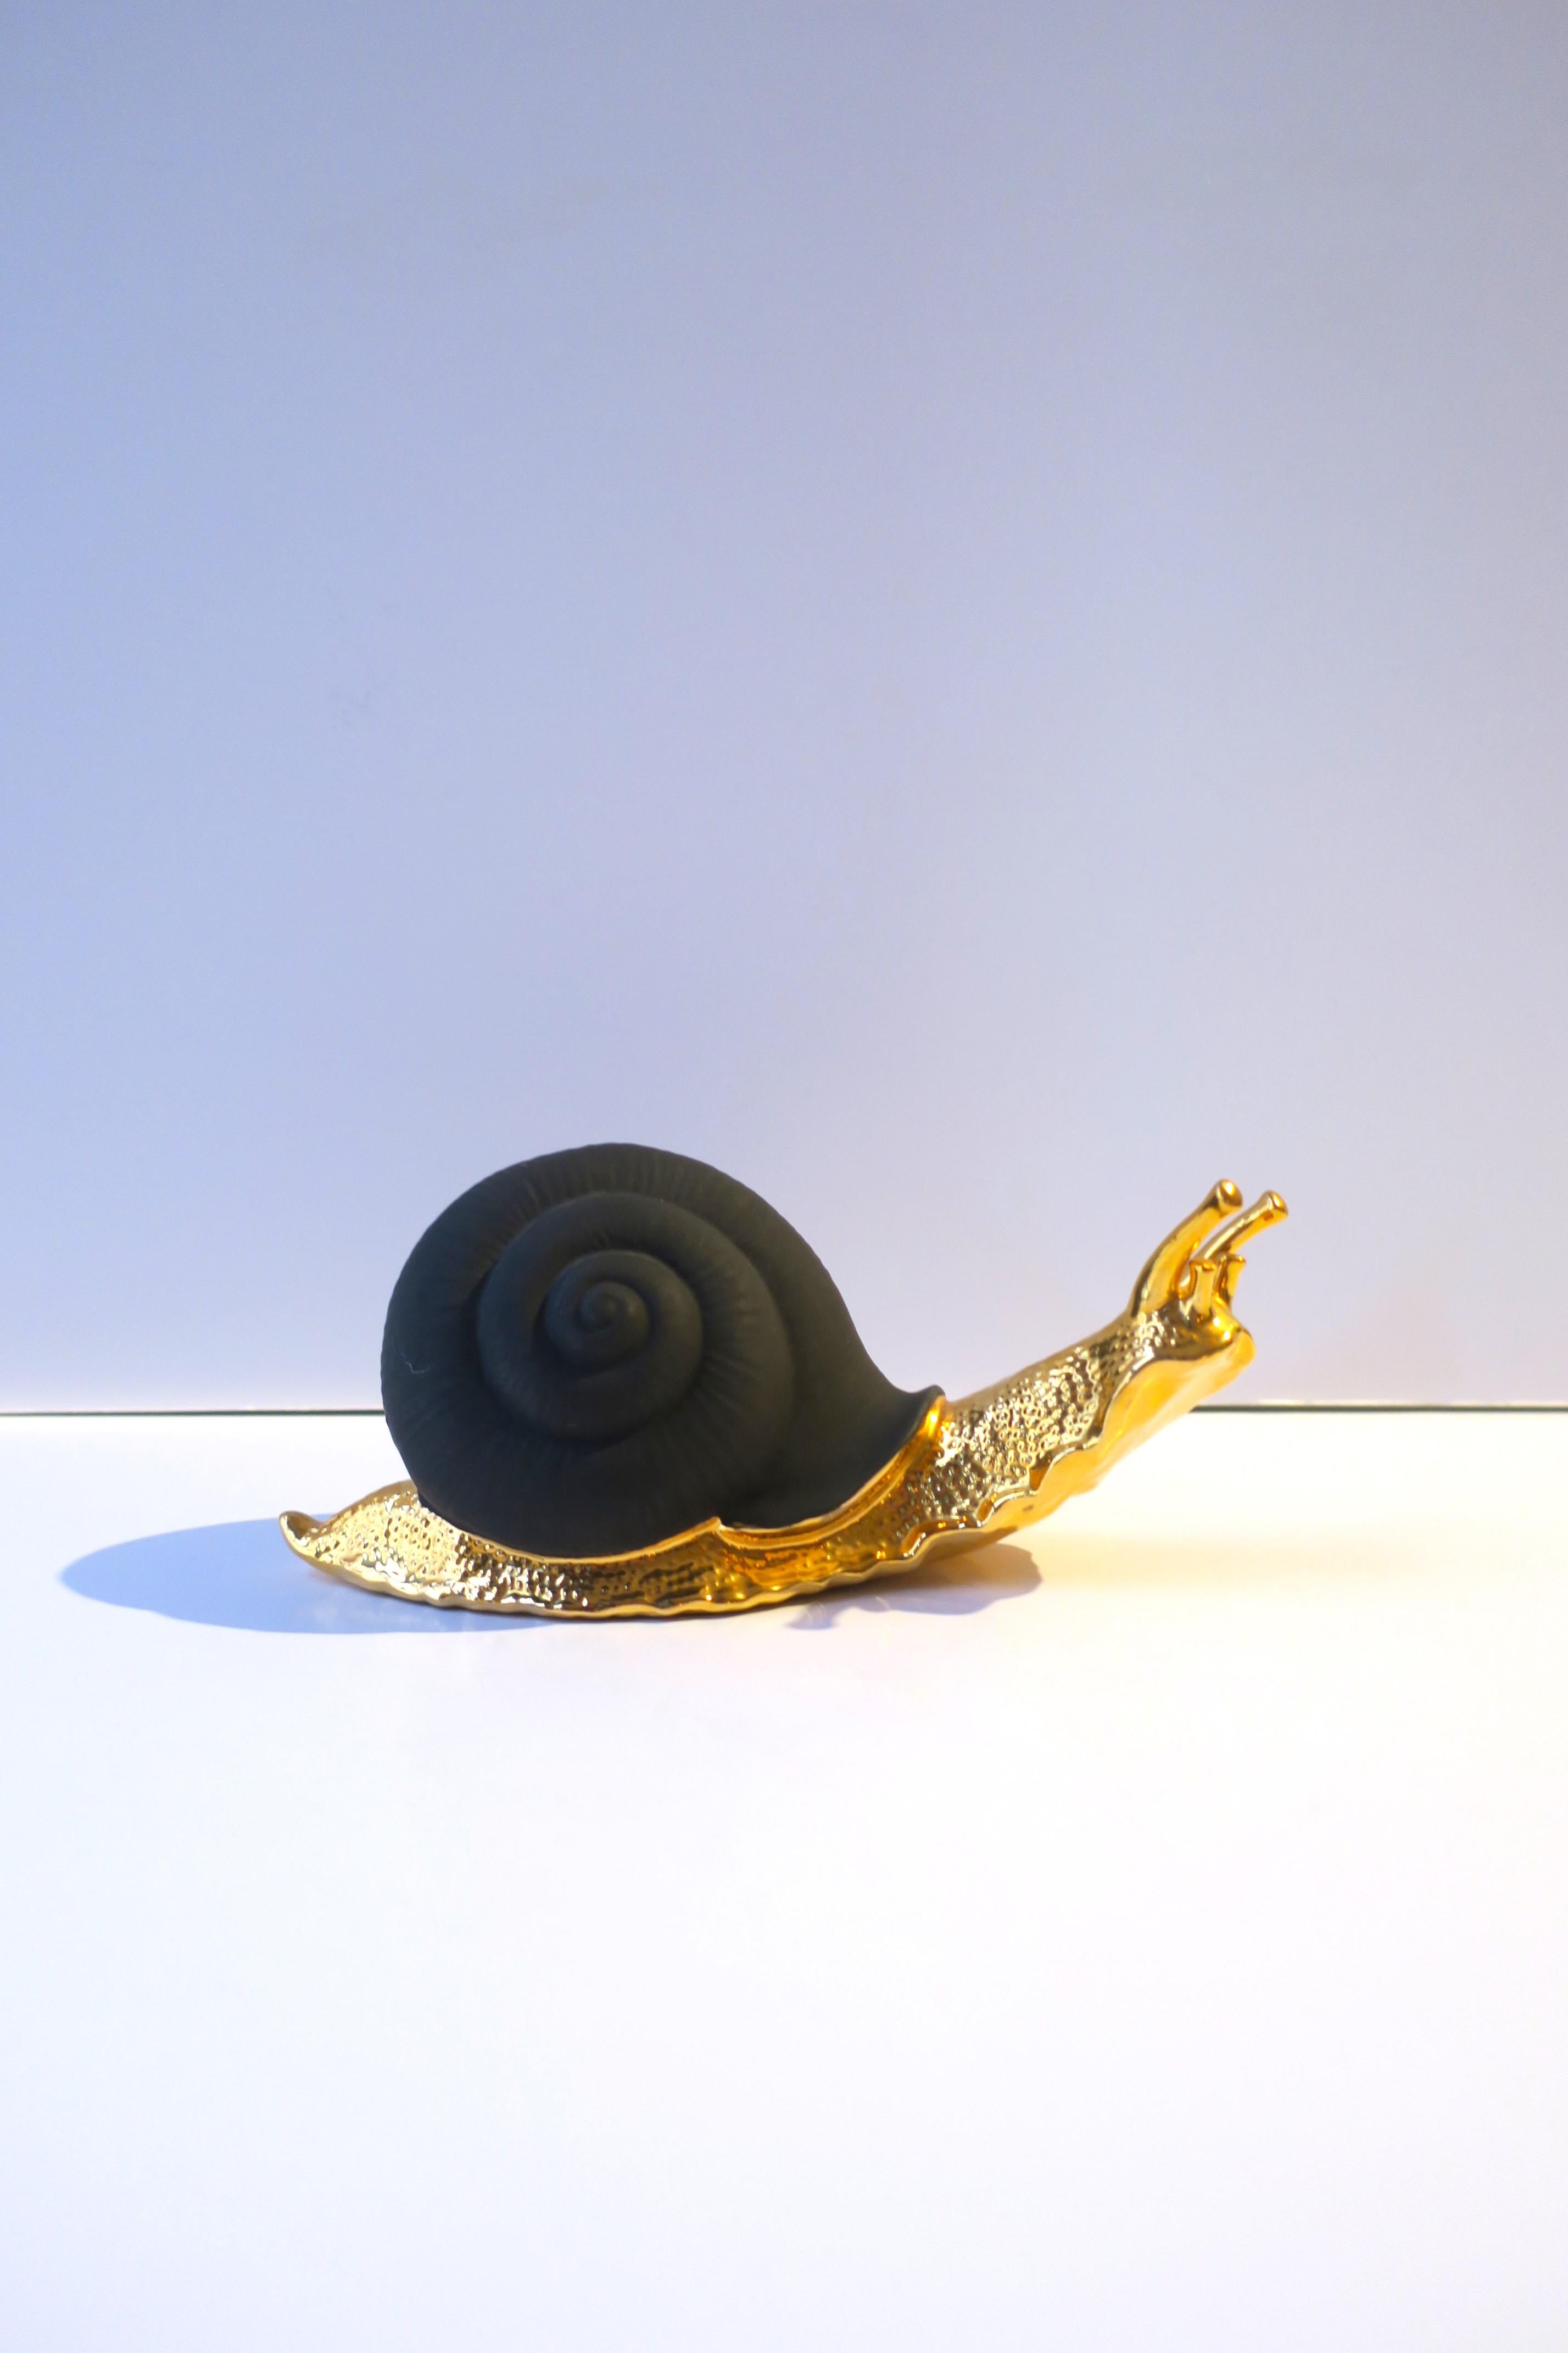 Sculpture italienne d'escargot en porcelaine de basalte noir et or, réalisée à la main par S. Puccini, vers la fin du XXe siècle, Italie. Une pièce fabriquée à la main en porcelaine noire mate et en émail doré brillant, une belle combinaison. La